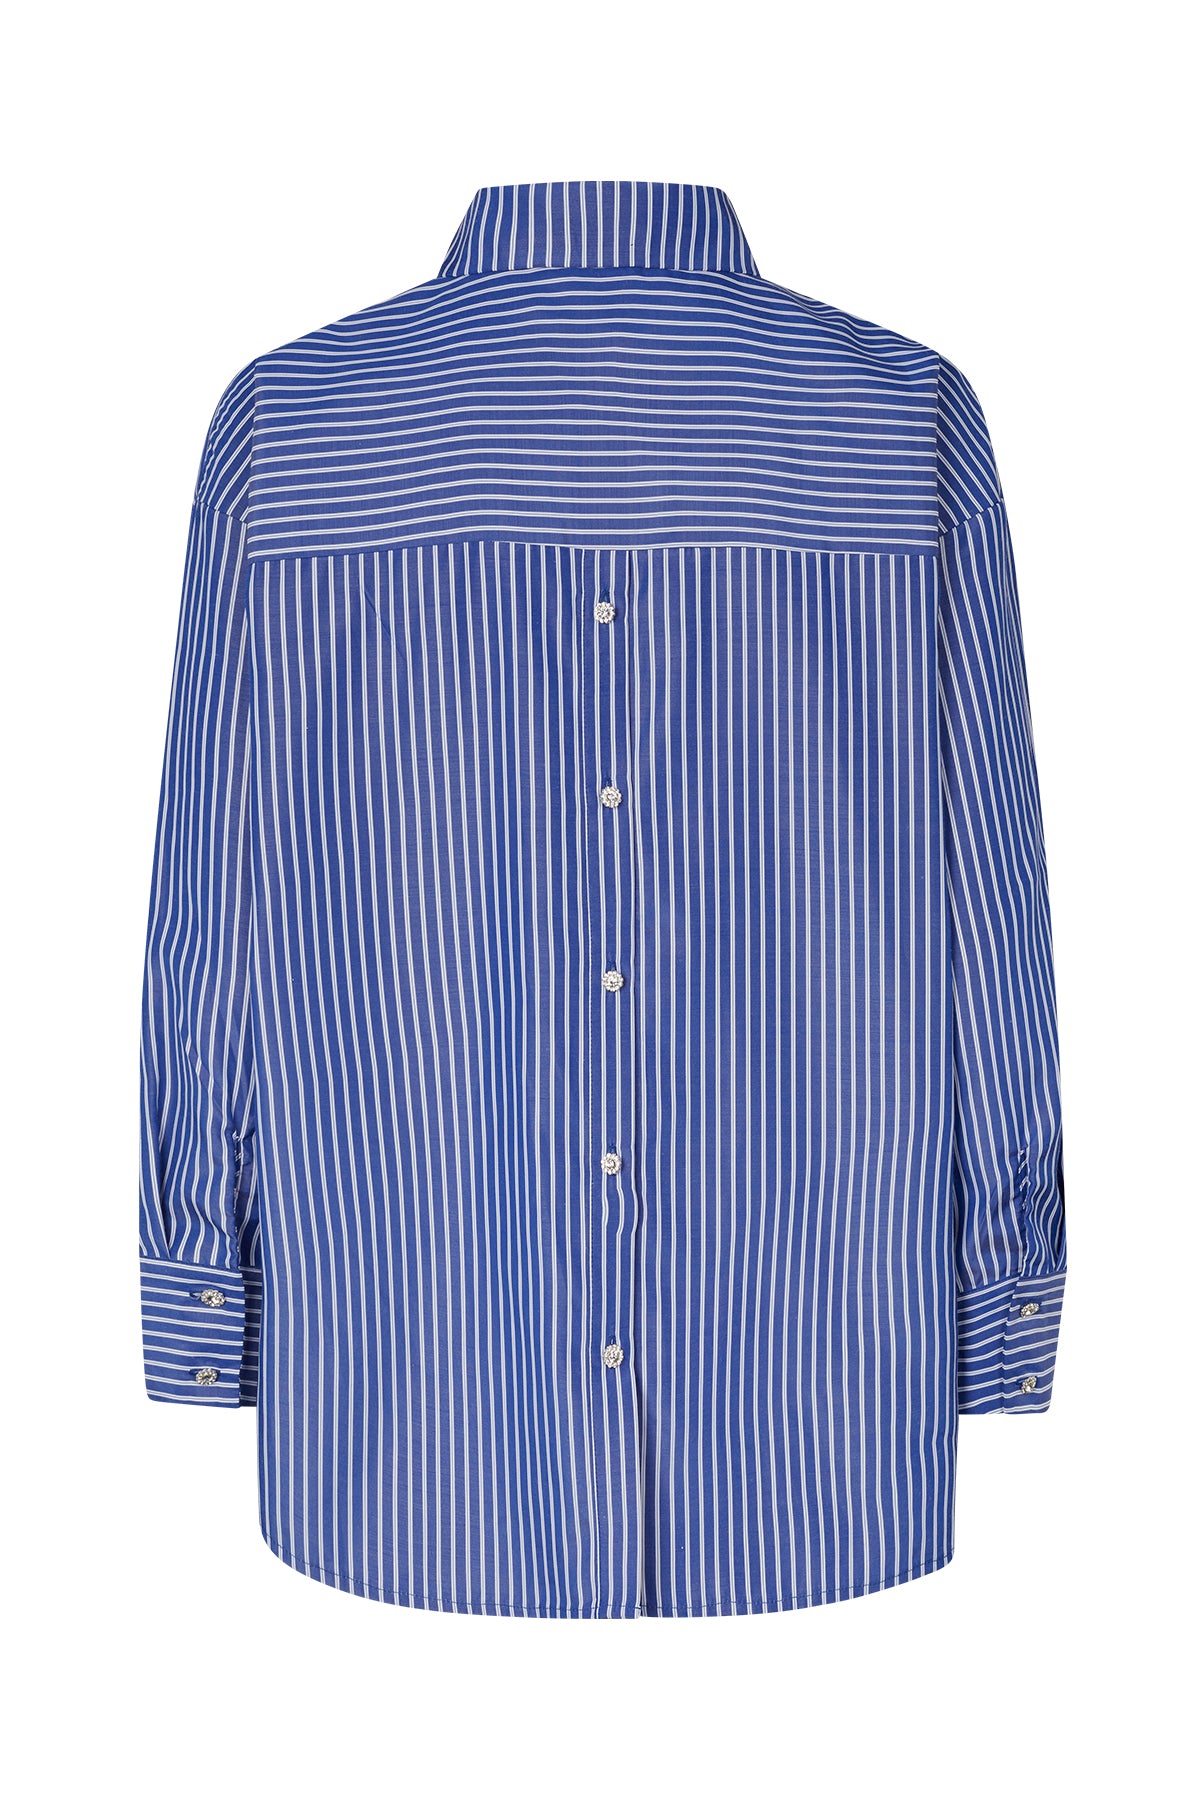 CRAS Office Shirt Shirt 8009 Dark Blue Stripe